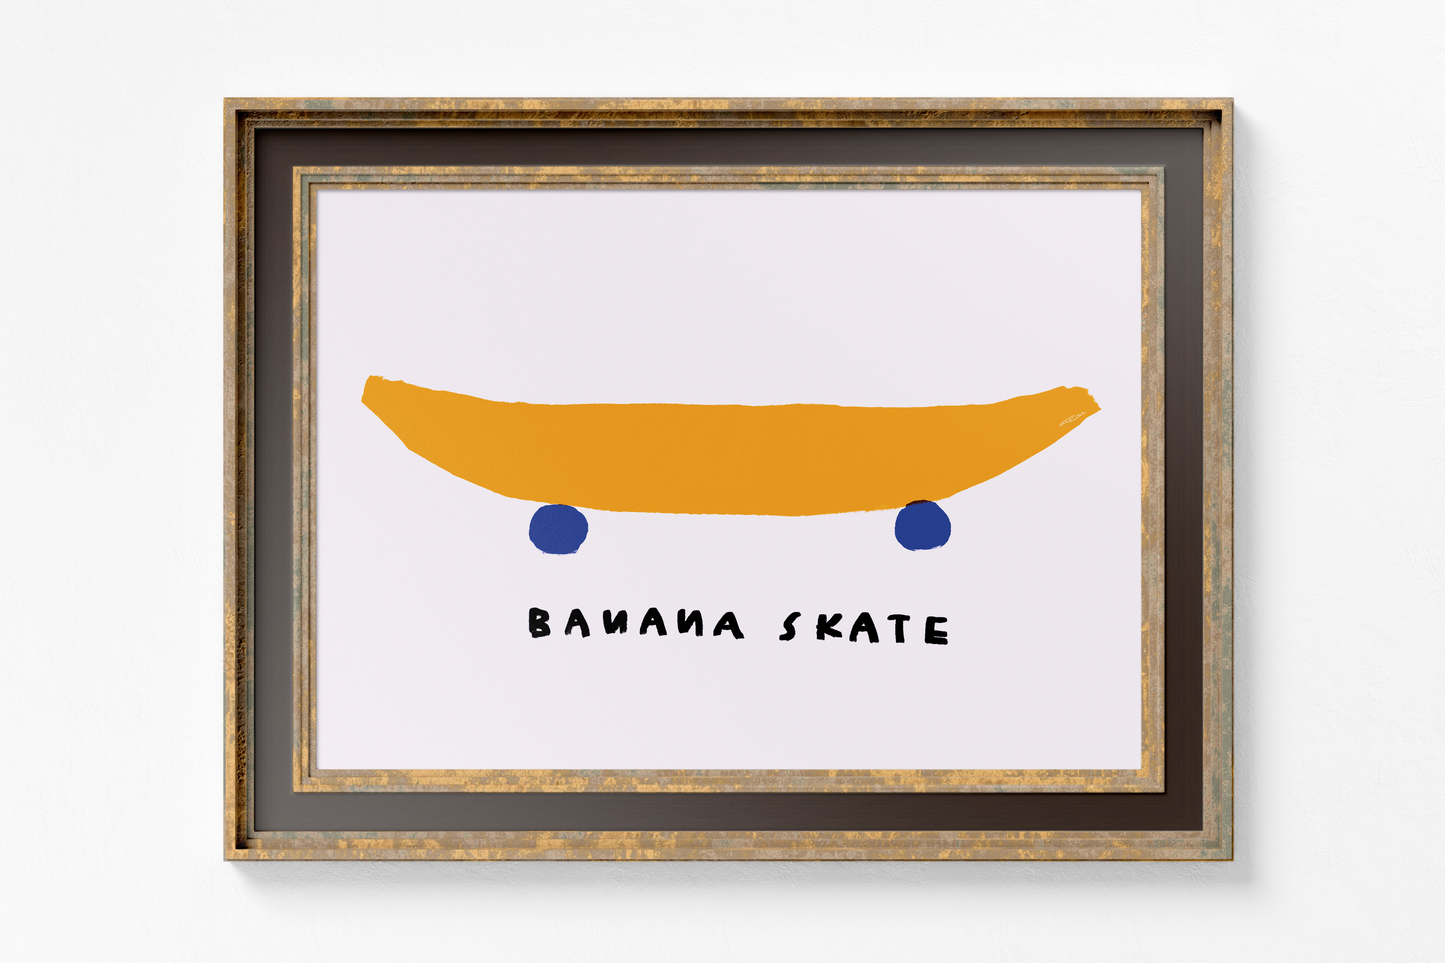 Banana Skate